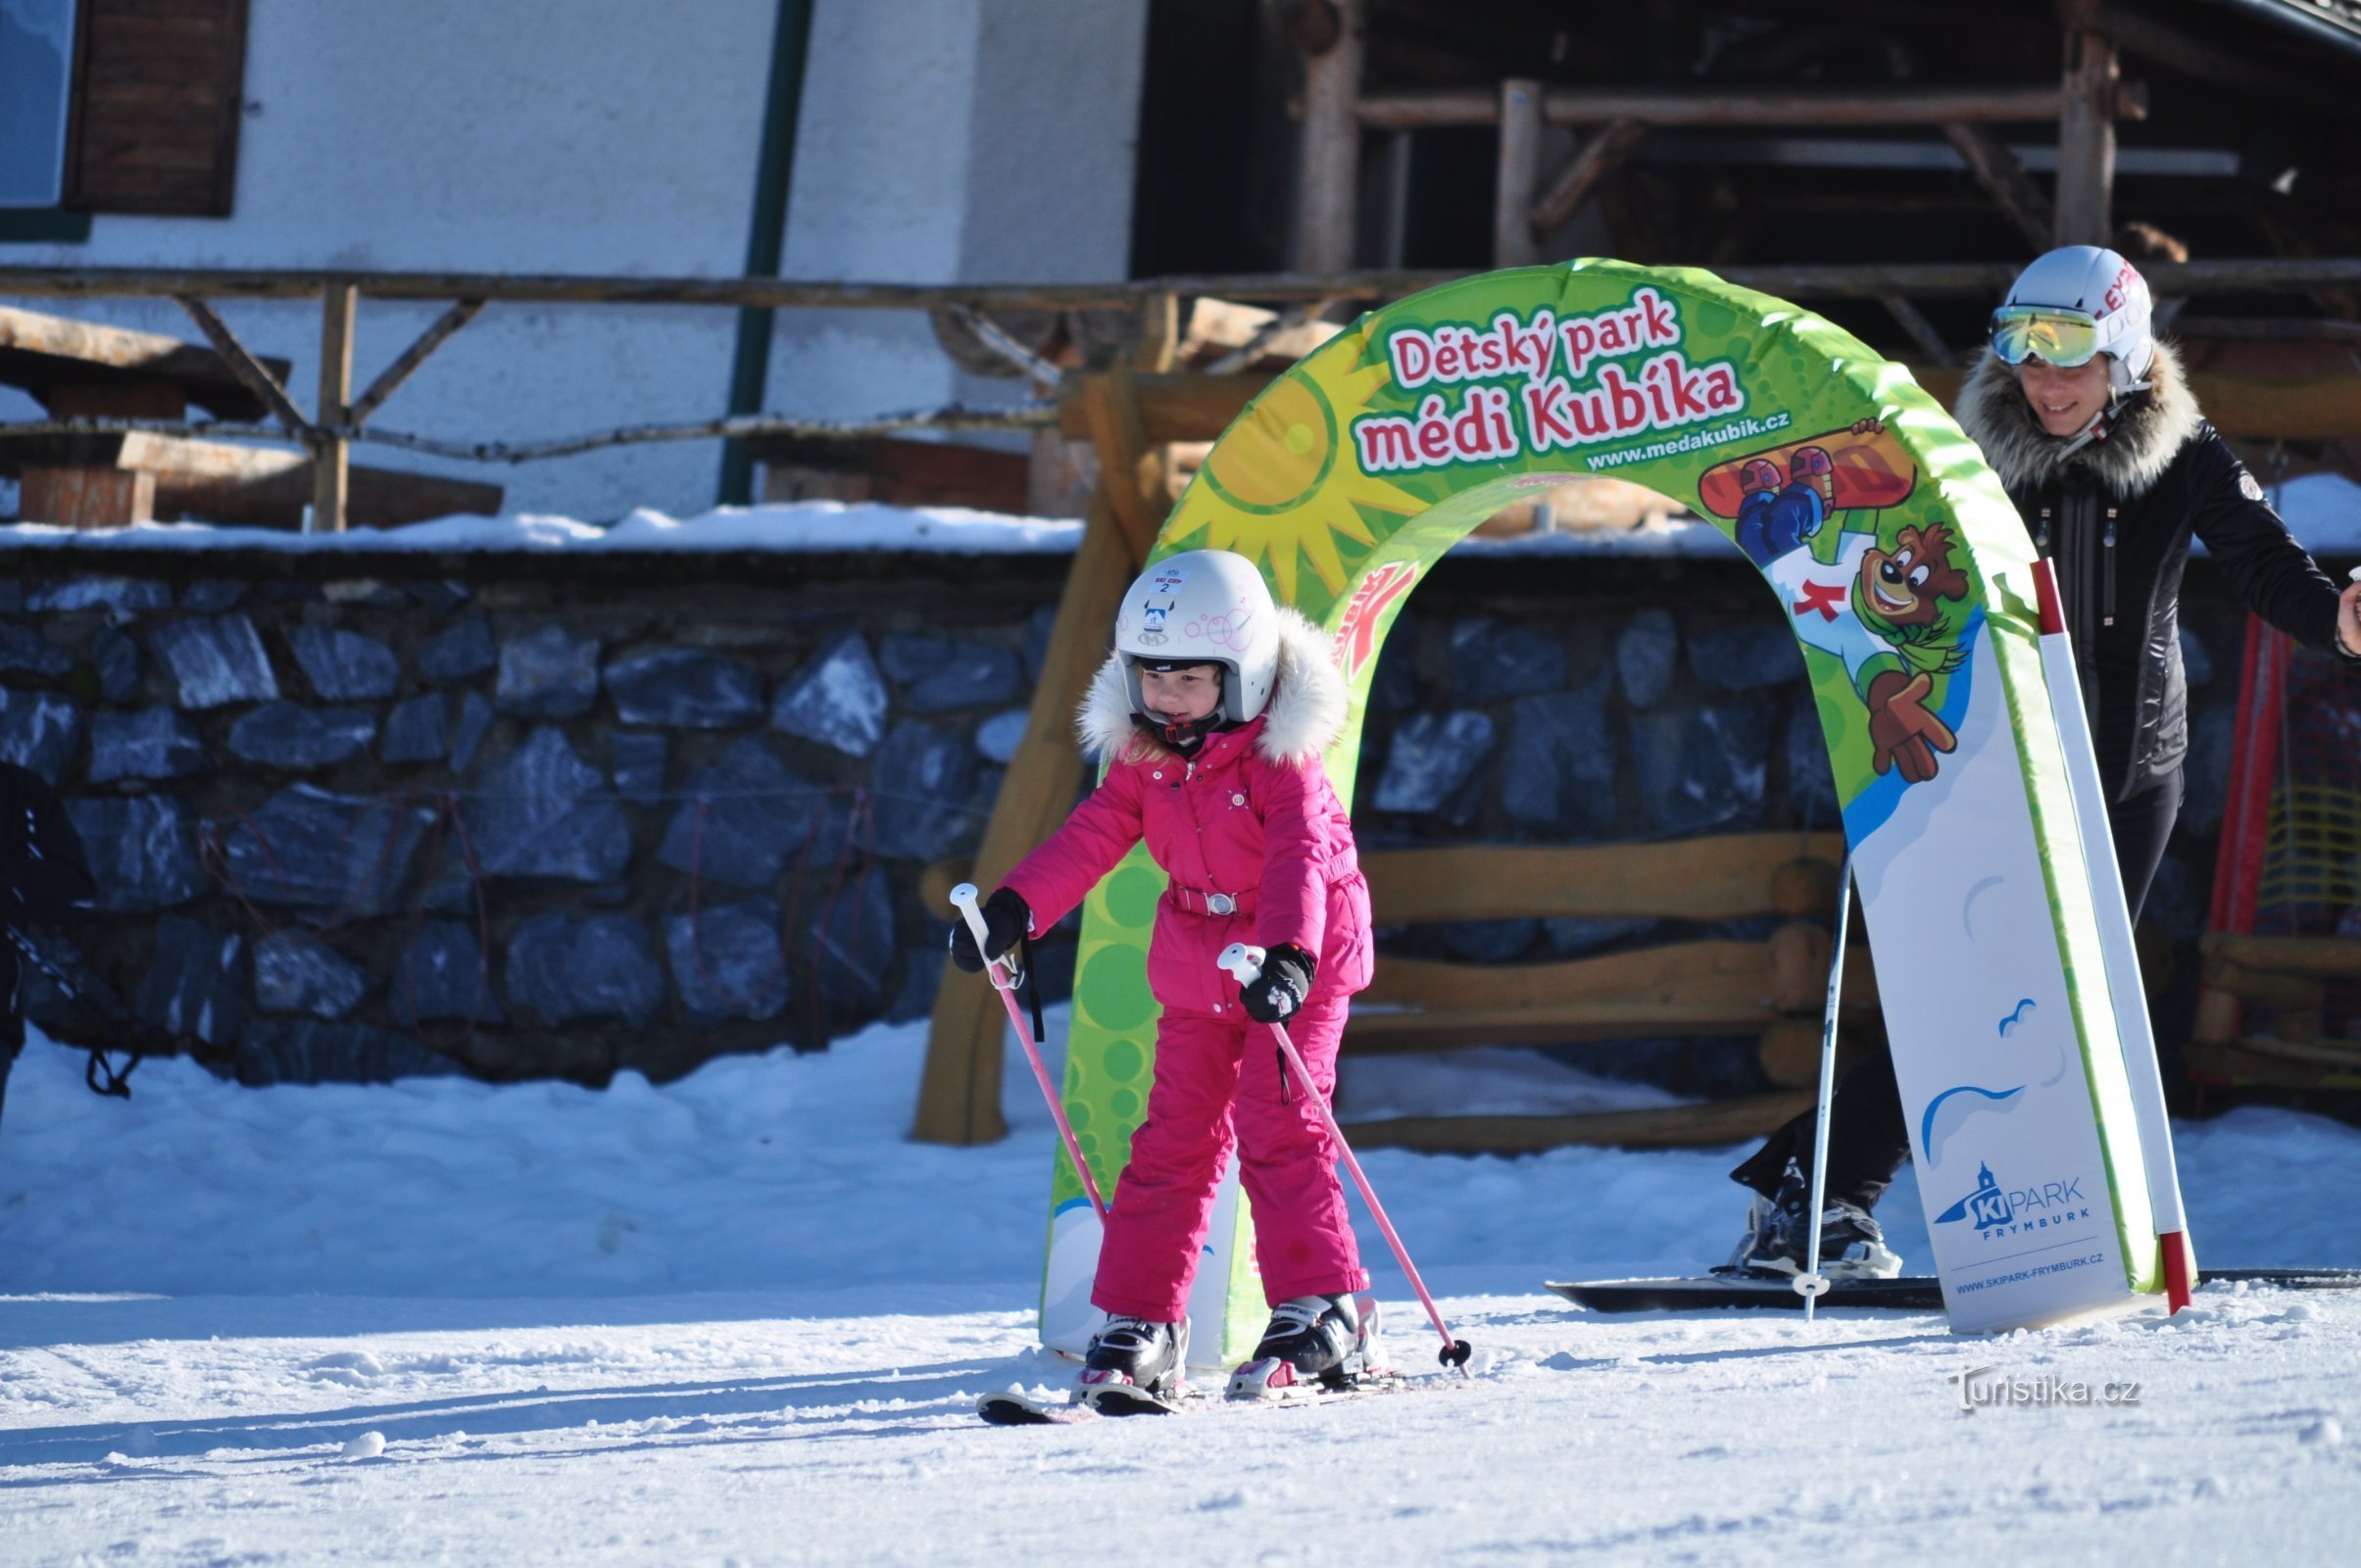 De elementen om te skiën zijn de trots van ons kinderpark